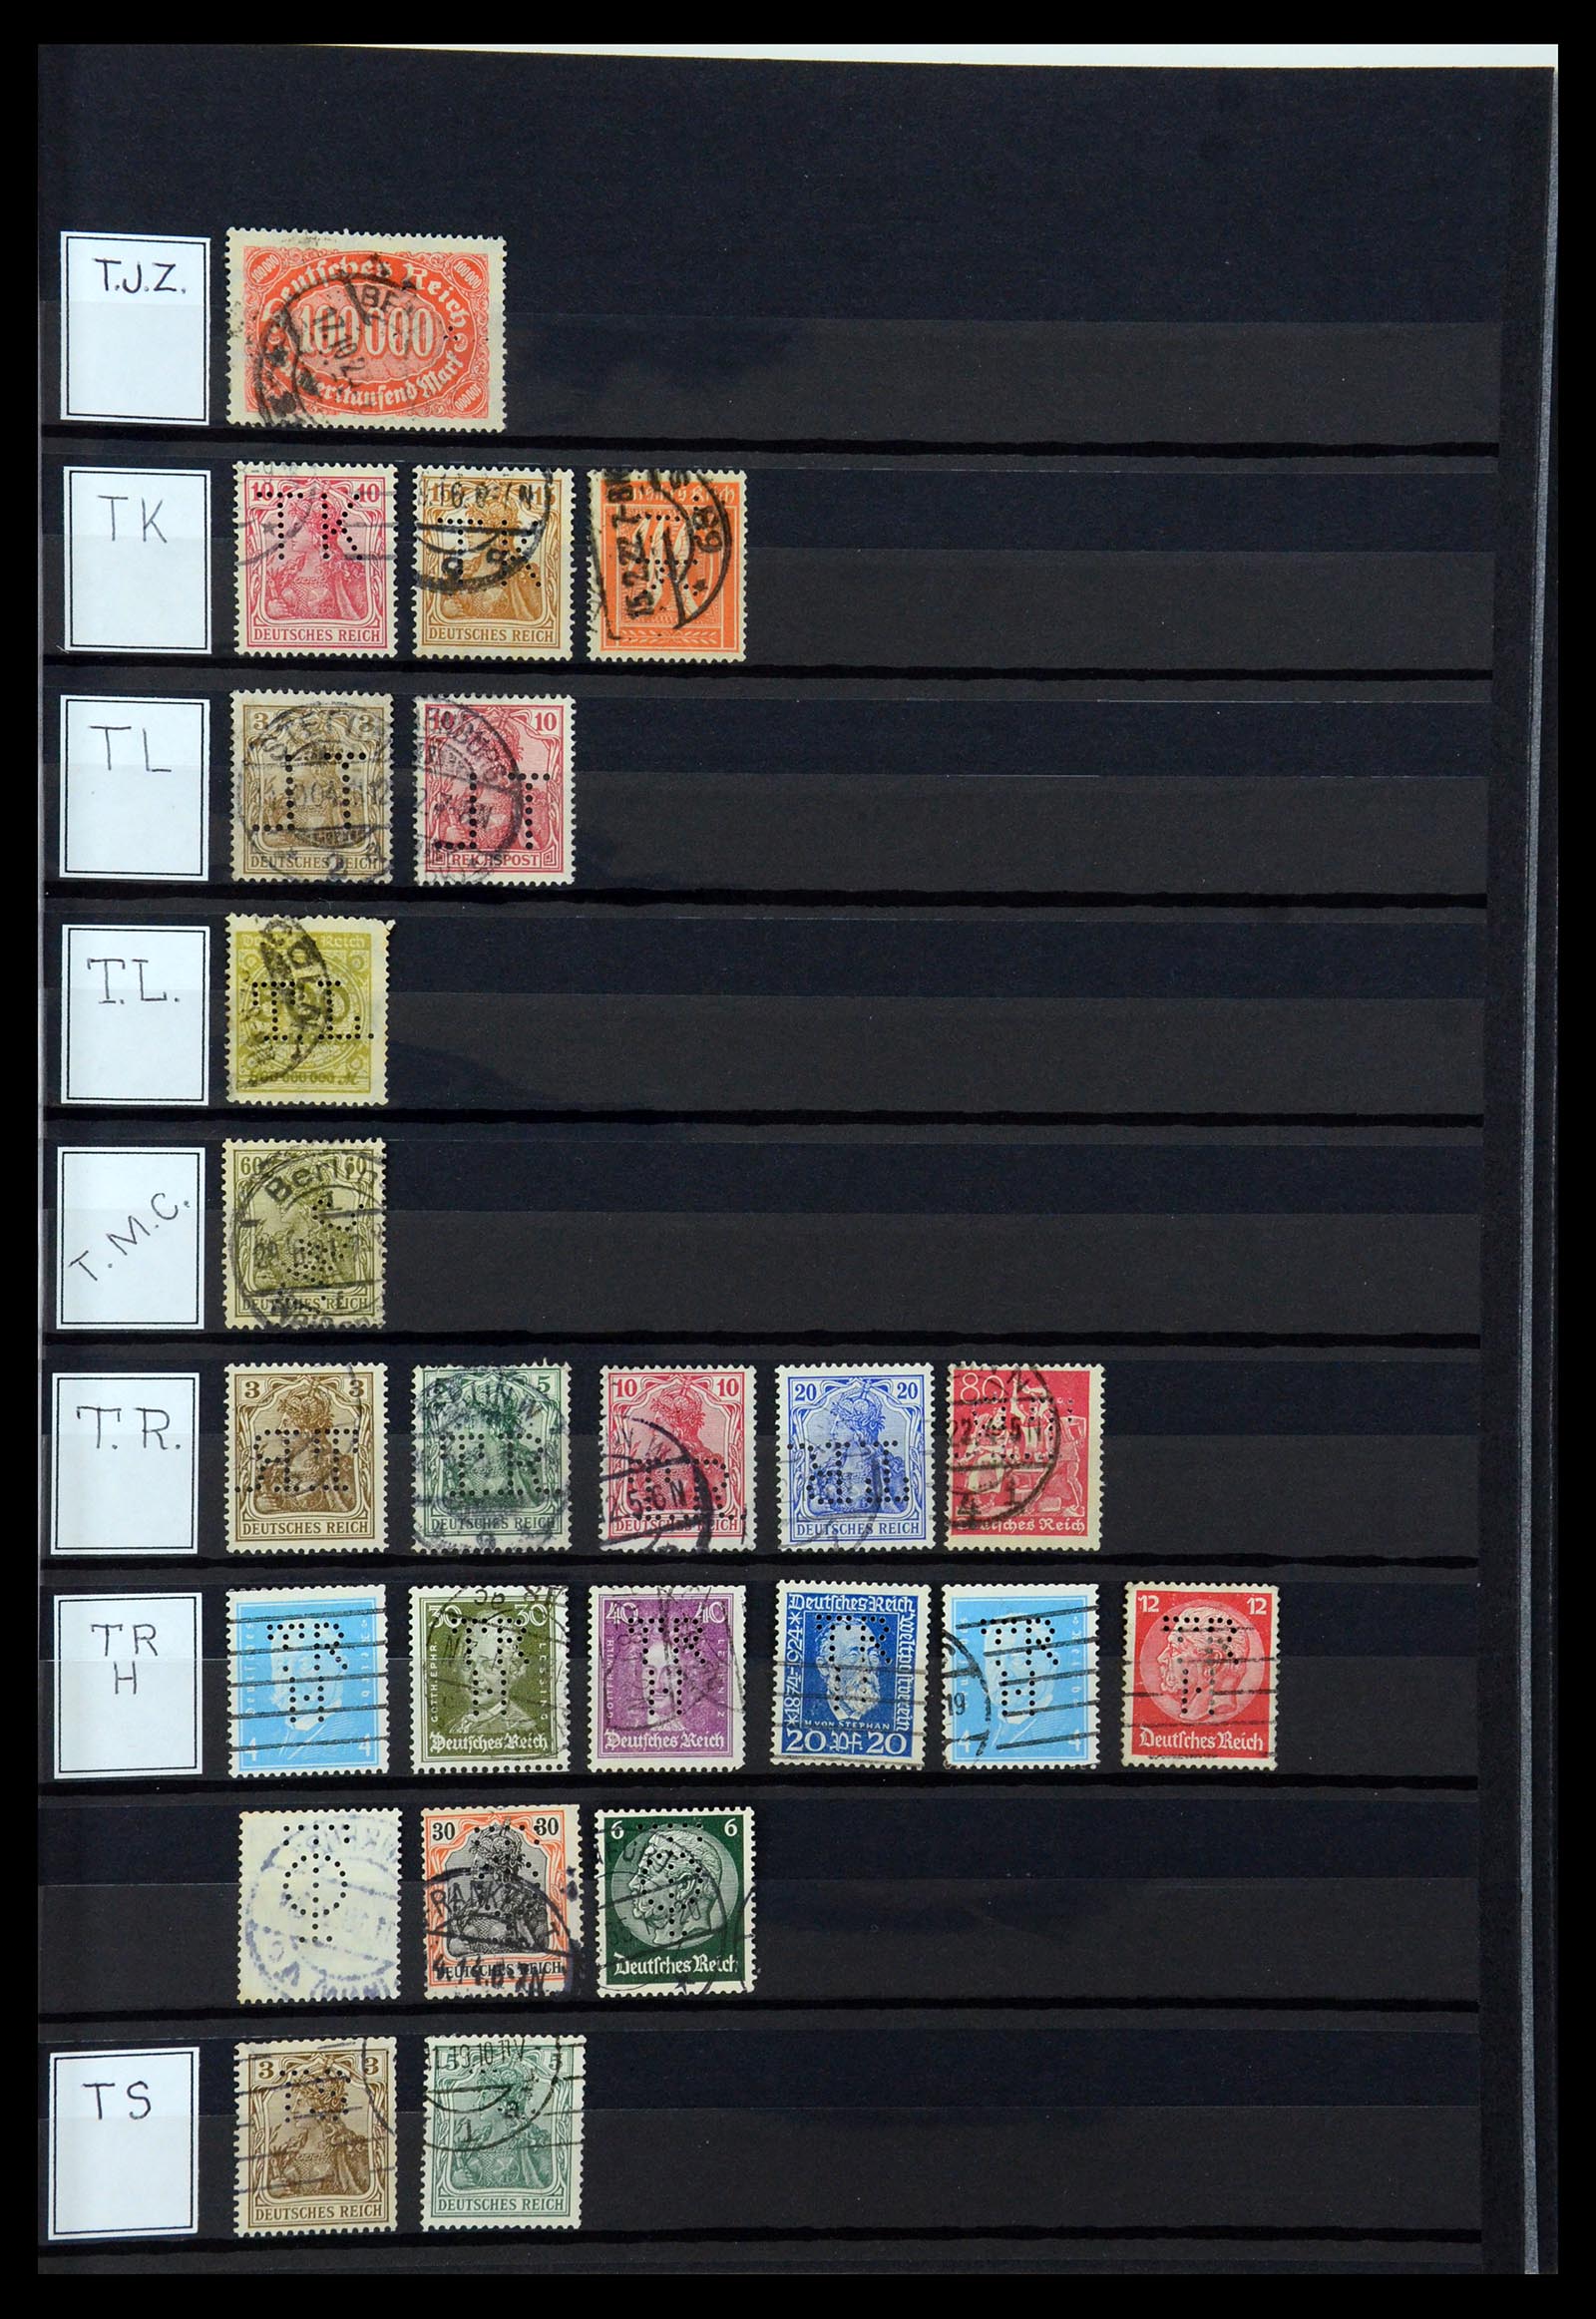 36405 314 - Stamp collection 36405 German Reich perfins 1880-1945.